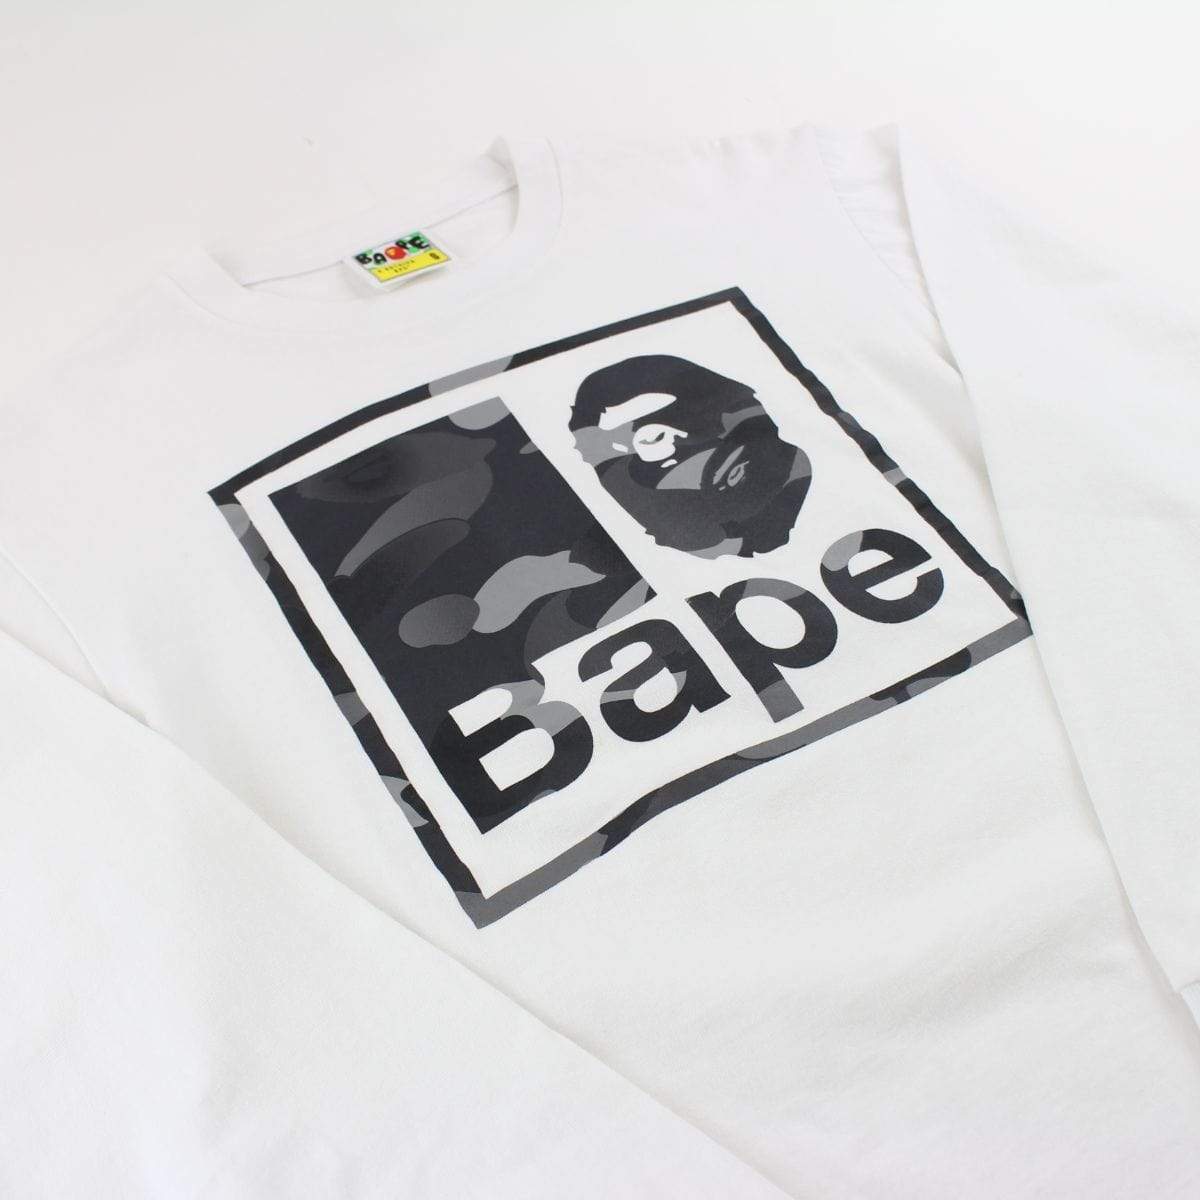 Bape Grey Camo Ape Text Square Logo LS White - SaruGeneral